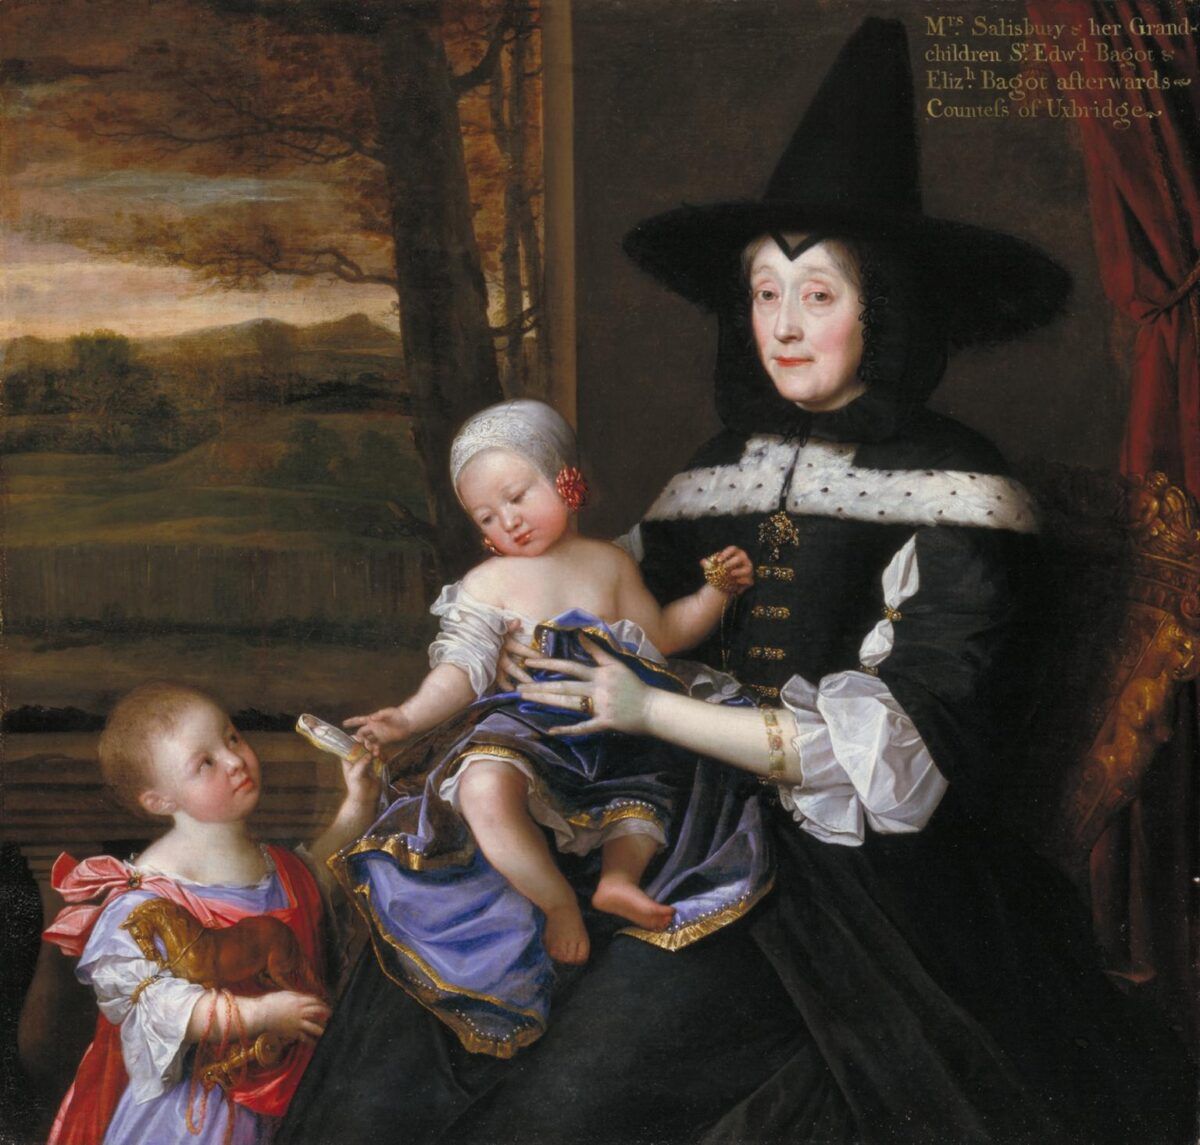 Porträtt av Mrs Salesbury med sina barnbarn Edward och Elizabeth Bagot 1675-6 John Michael Wright 1617-1694 Presenterad av Patrons of British Art genom Tate Gallery Foundation 1993 http://www.tate.org.uk/art/work/T06750